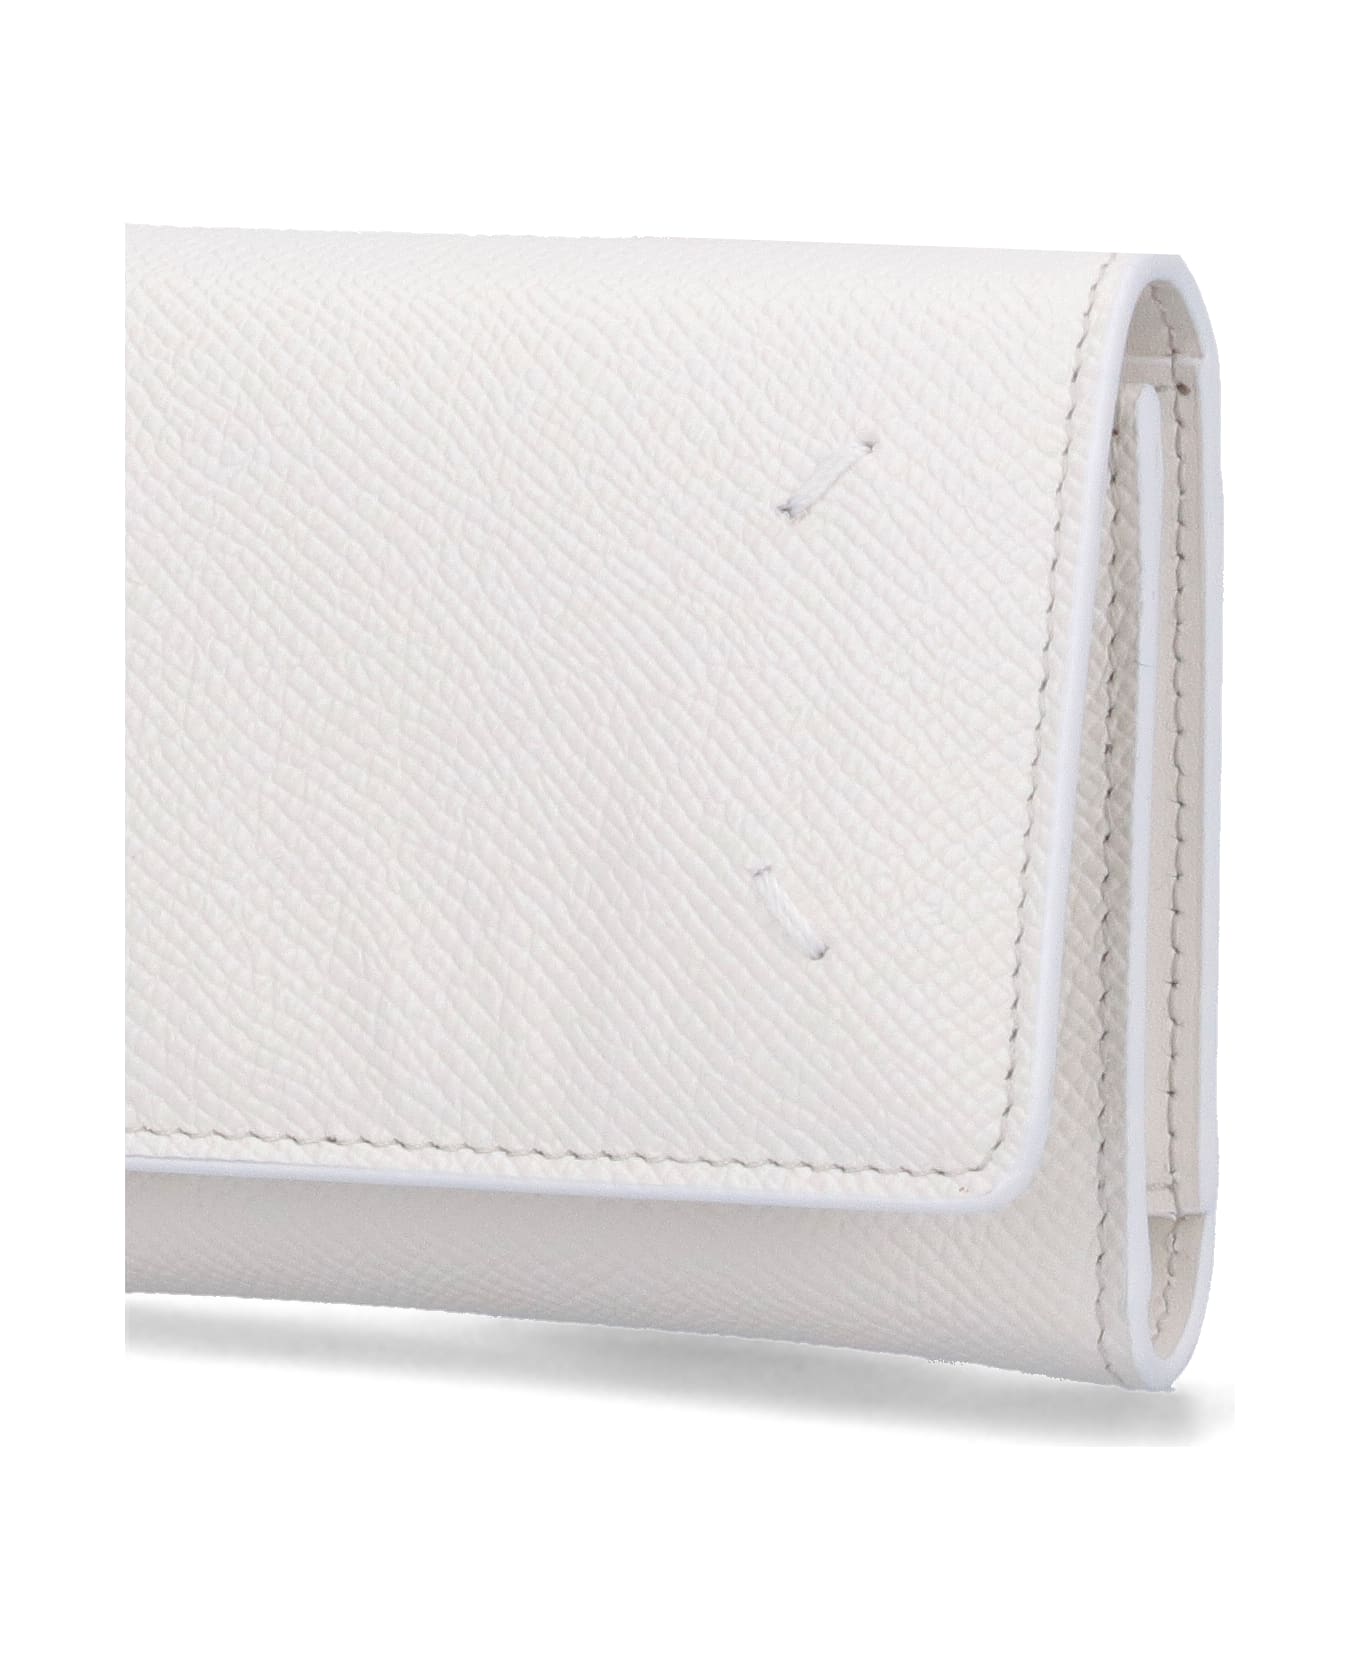 Maison Margiela Four Stitches Wallet - White